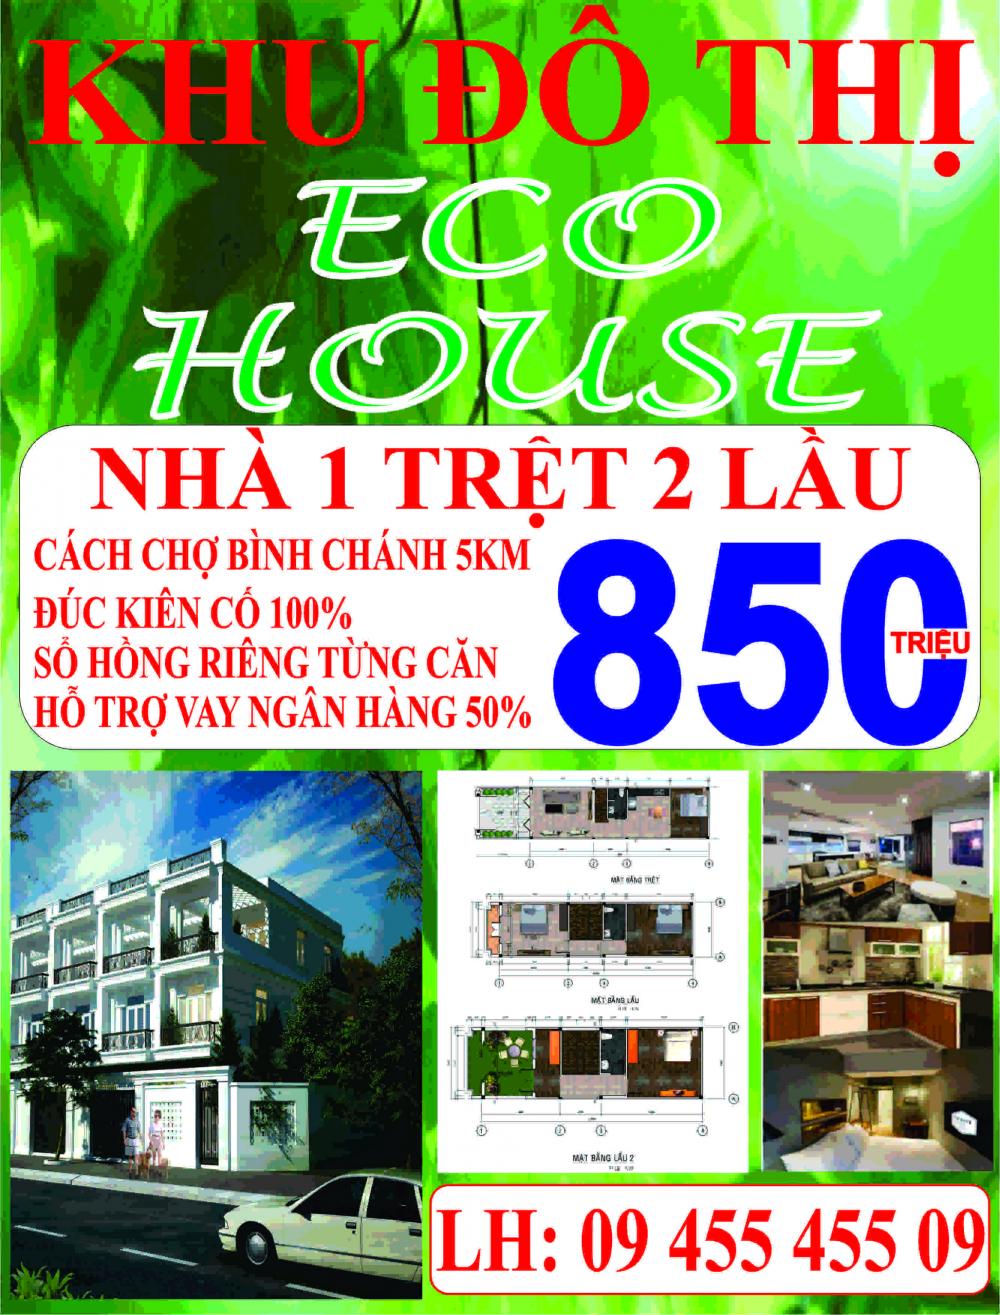 Nhà Phố Cao Cấp Khu Độ Thị Eco House, MT Đinh Đức Thiện, Giáp Chợ Bình Chánh. LH: 0945545509